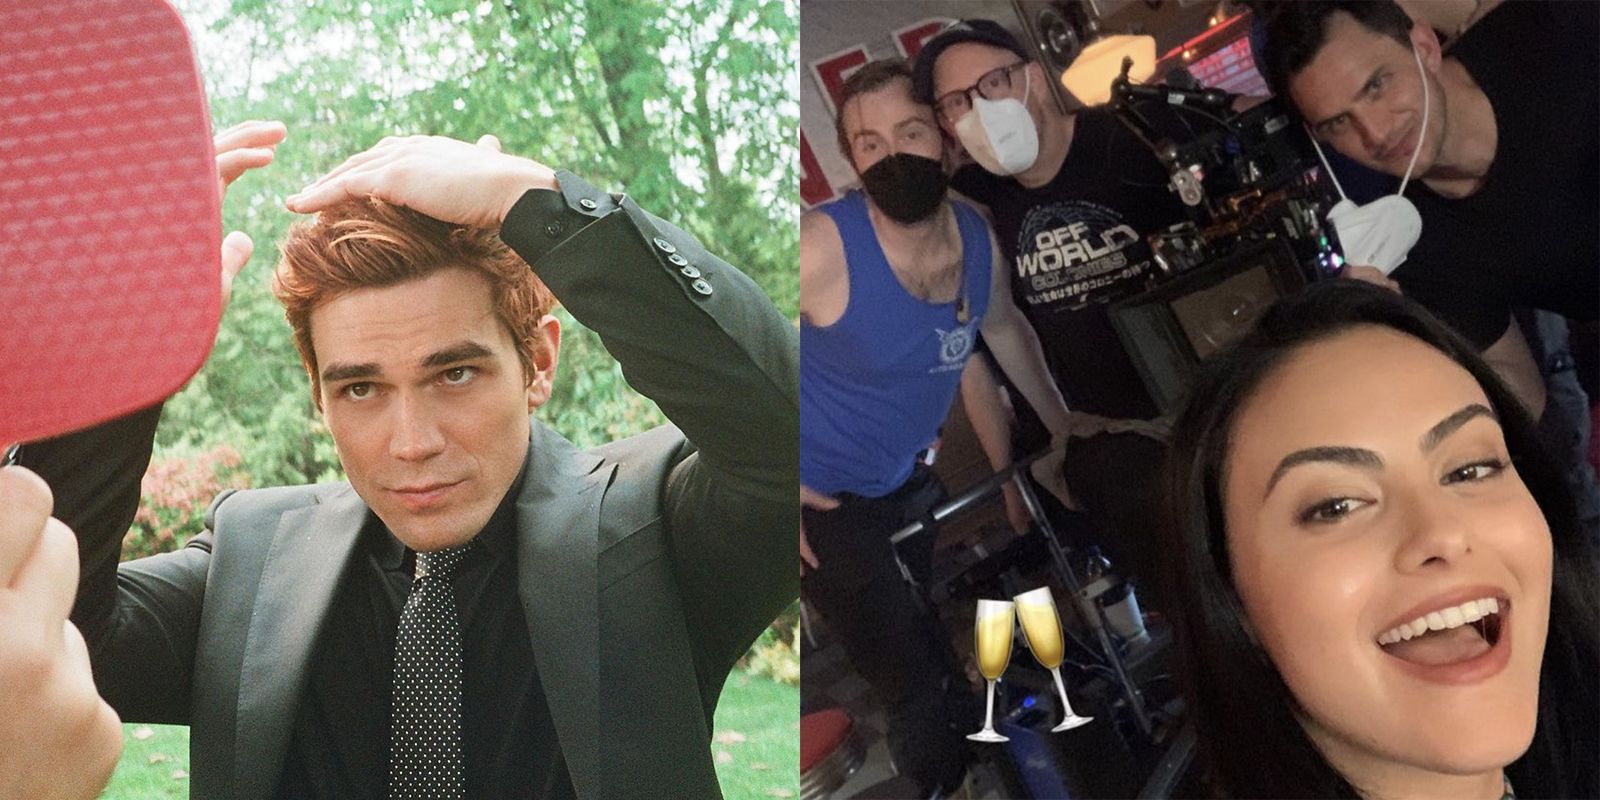 El reparto de "Riverdale" comparte fotos desde el set tras finalizar el rodaje de la quinta temporada